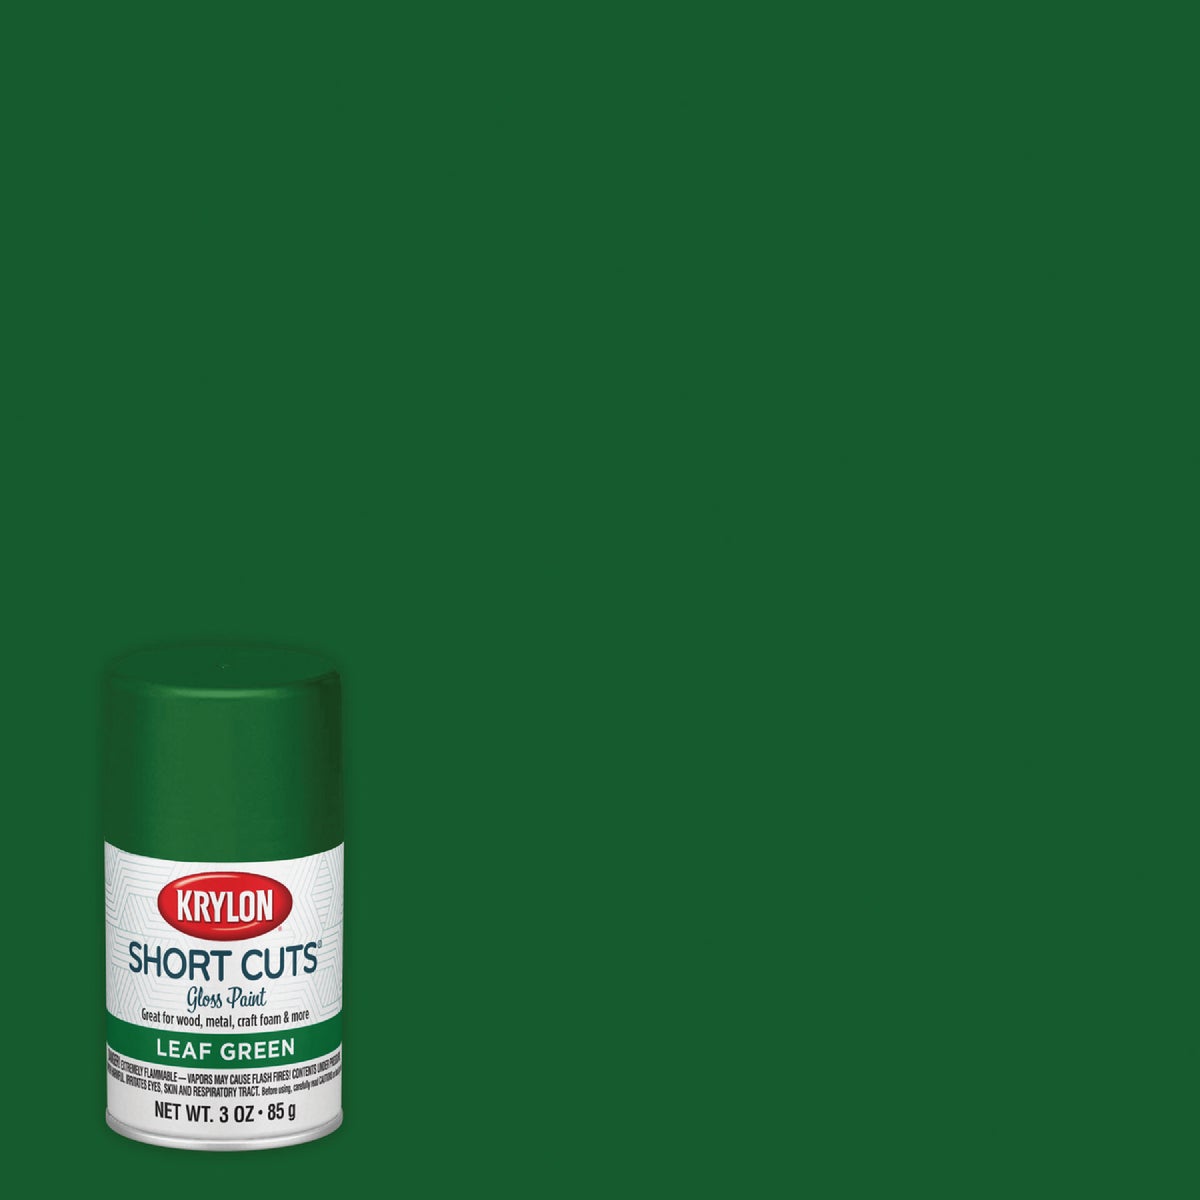 Krylon Short Cuts 3 Oz. High-Gloss Enamel Spray Paint, Leaf Green